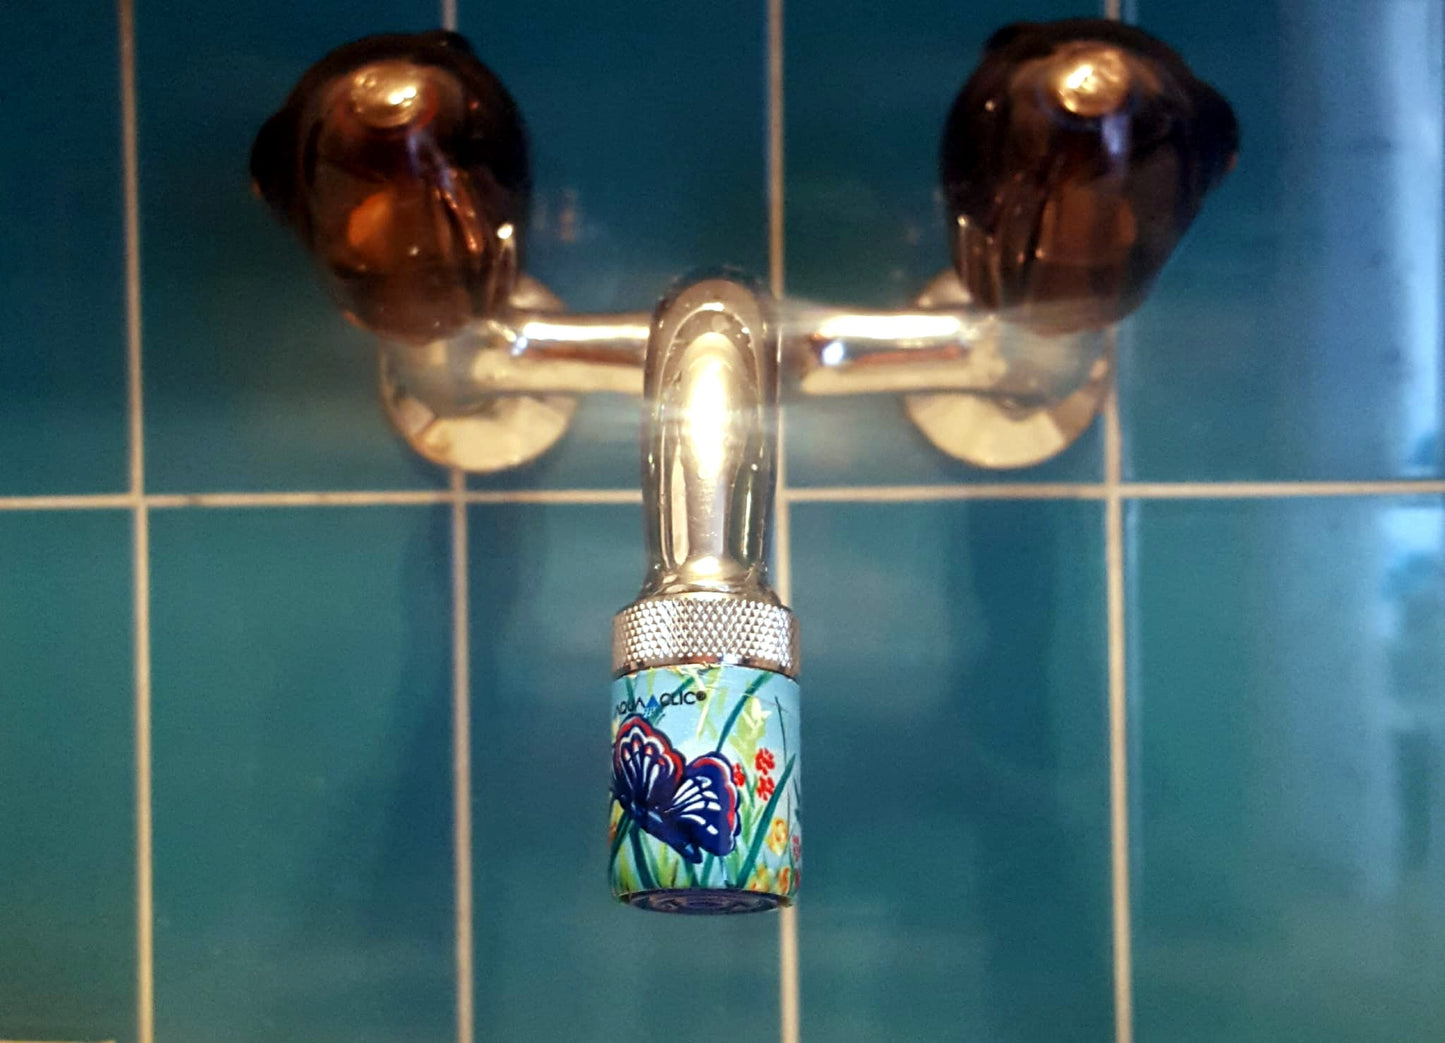 AquaClic-Économiseur d'eau sur le robinet avec design Papillons pour réduire la consommation d'eau et les coûts.